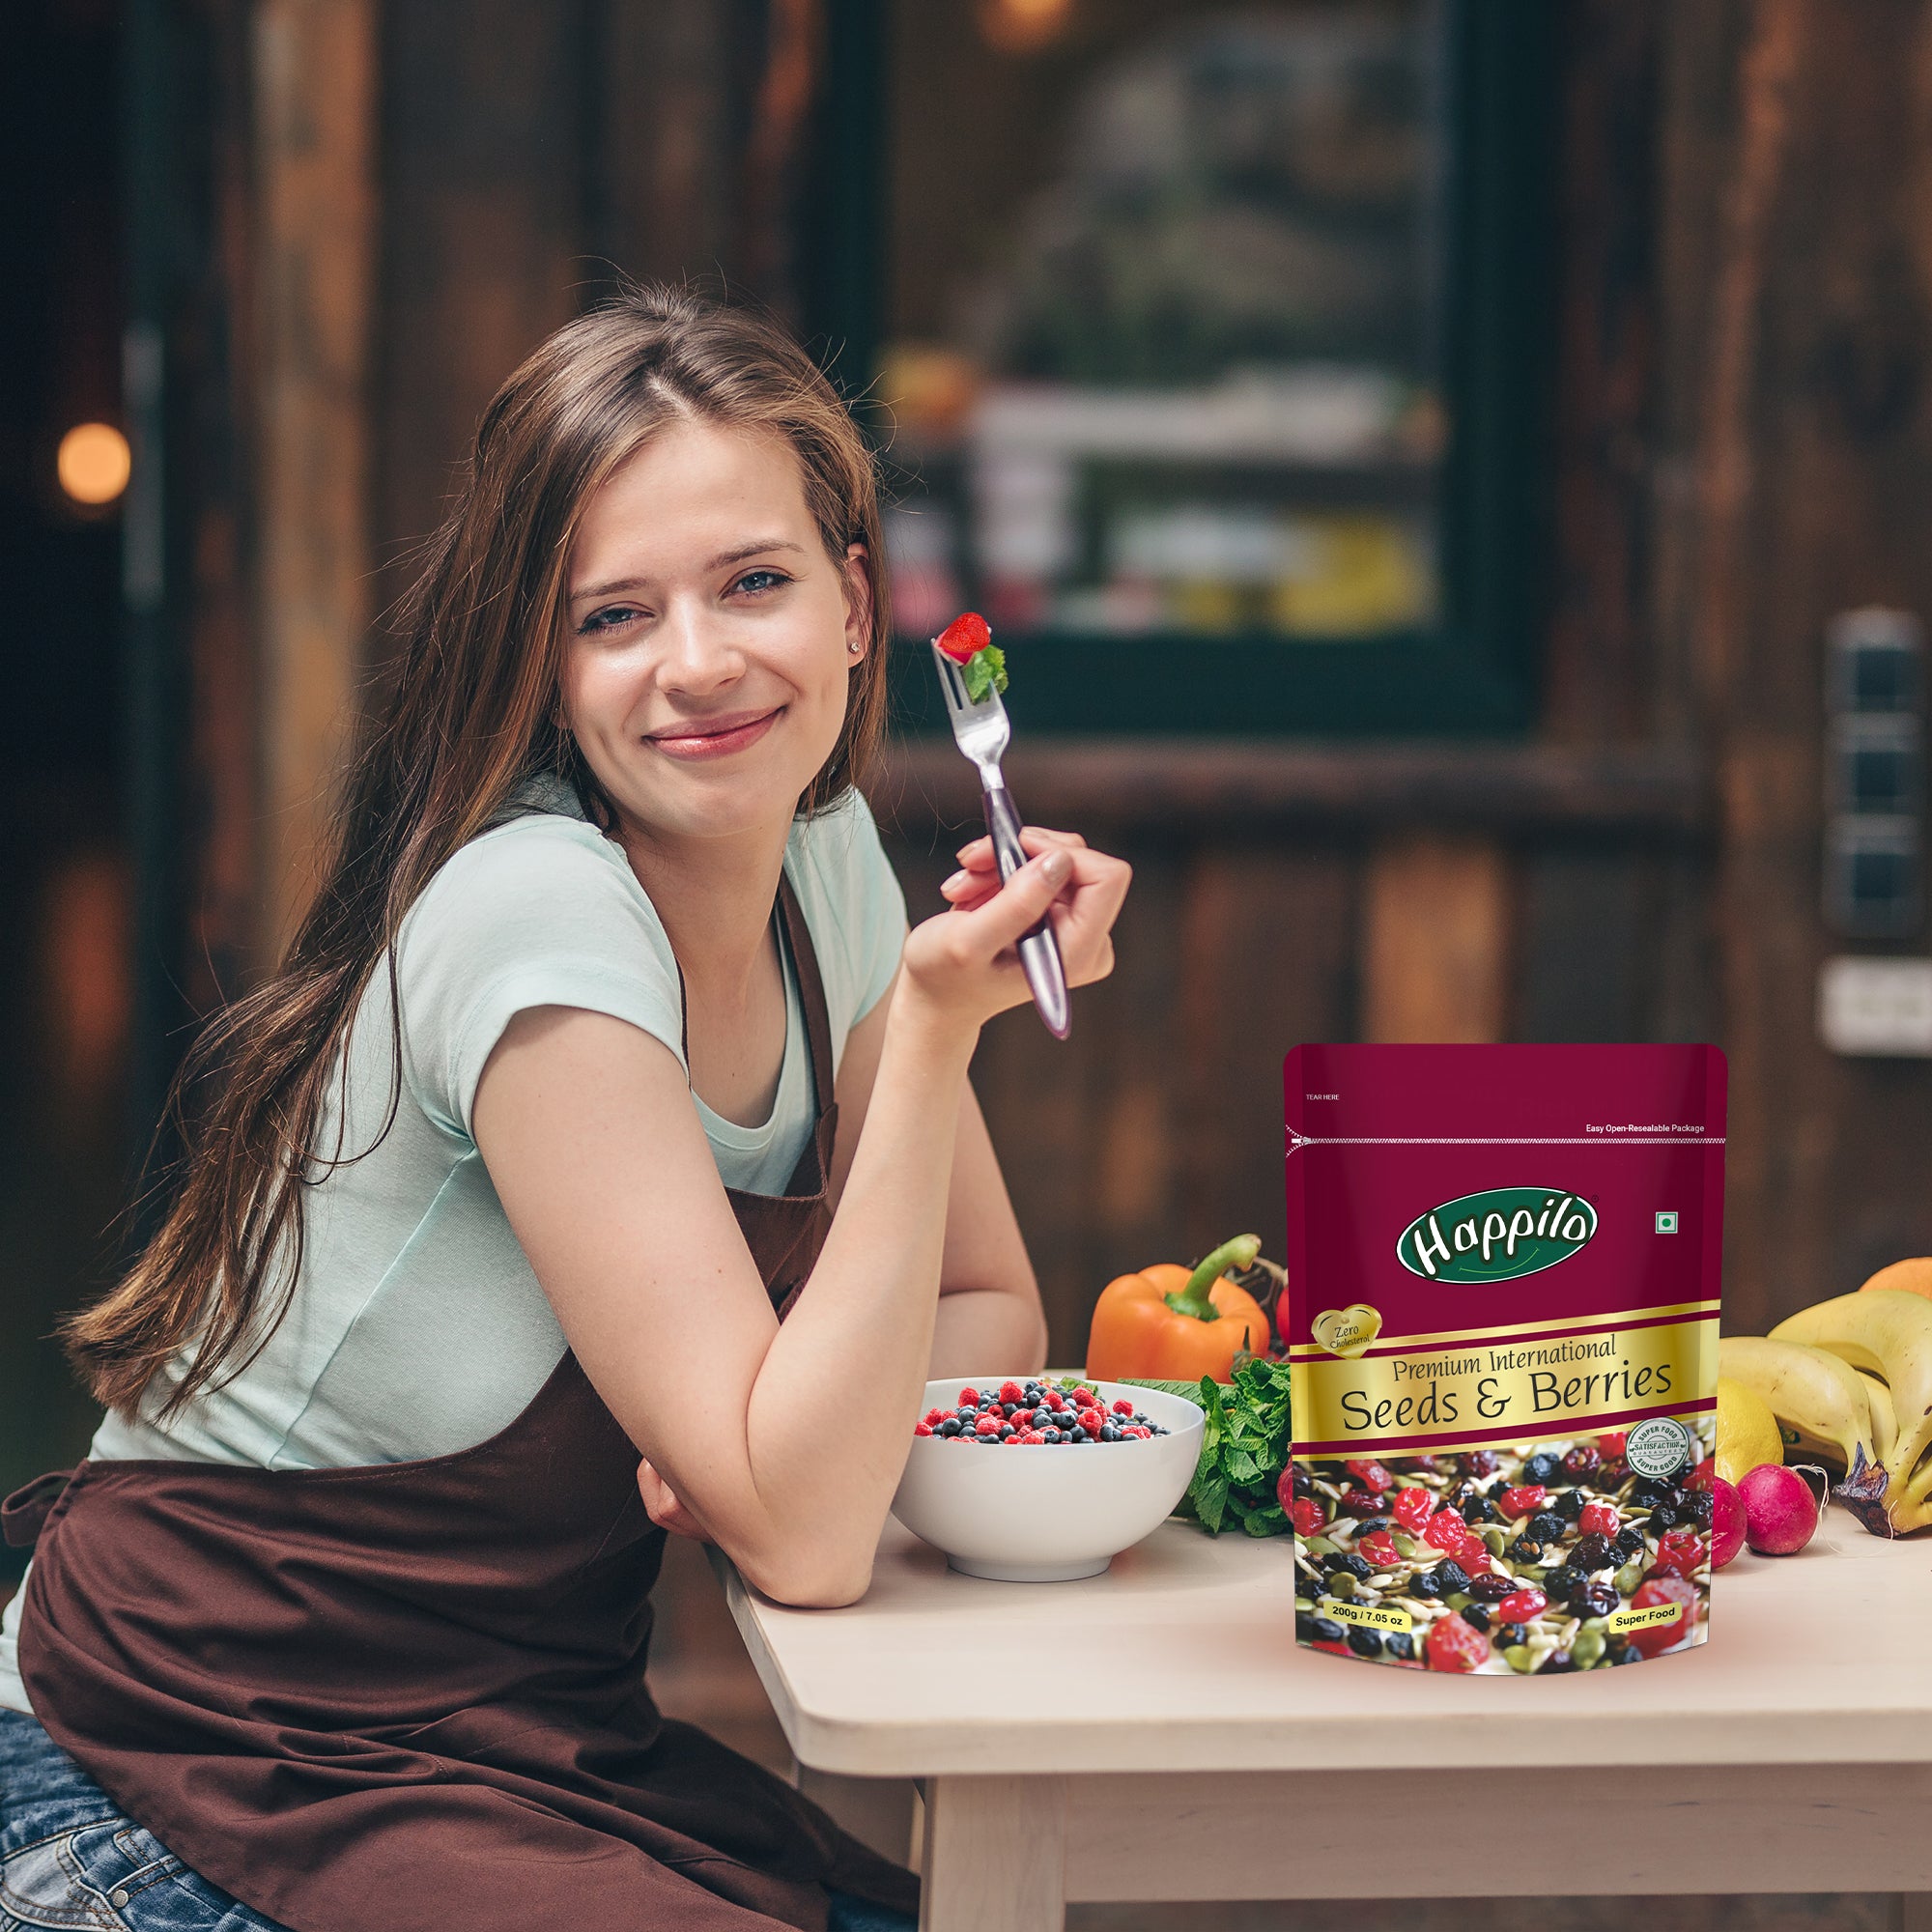 Happilo Sweet & Crunchy Premium Seeds & Berries Mix